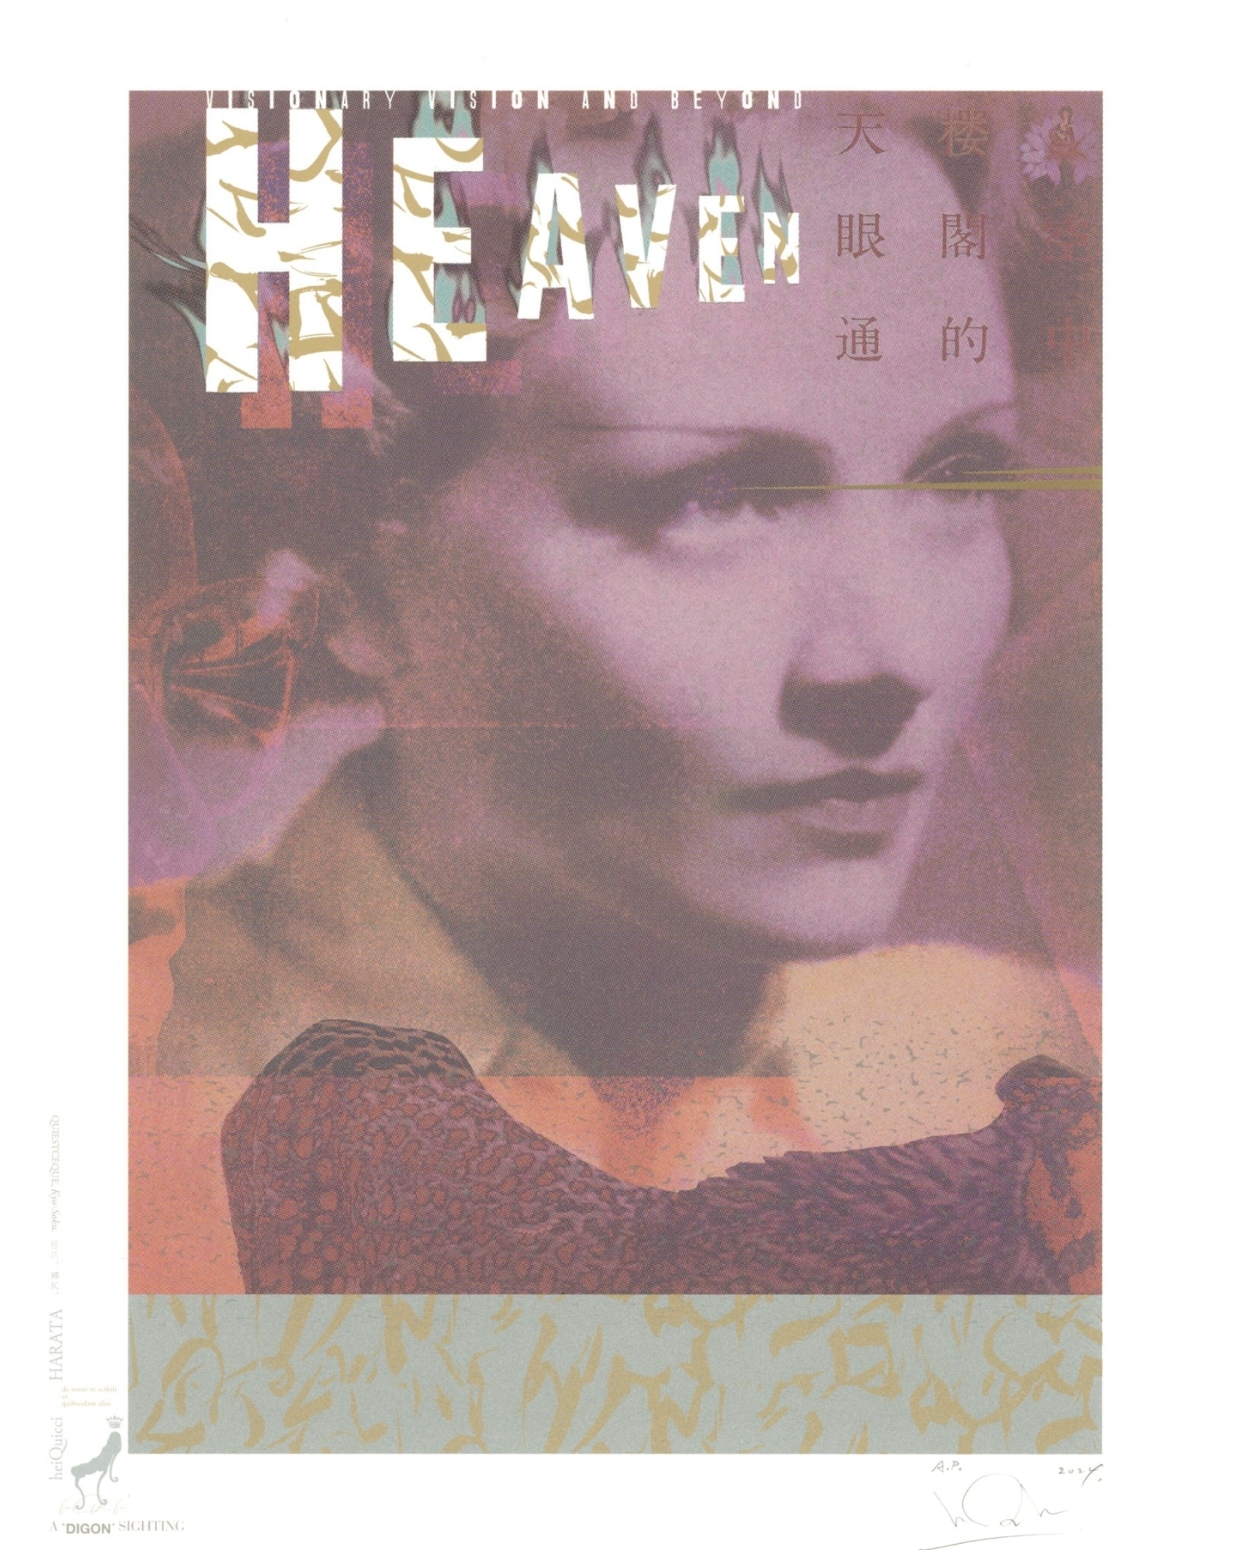 シルクスクリーンポスター「Hommage to “HEAVEN”, the magazine of Visionary Vision and Beyond.」 | 羽良多平吉